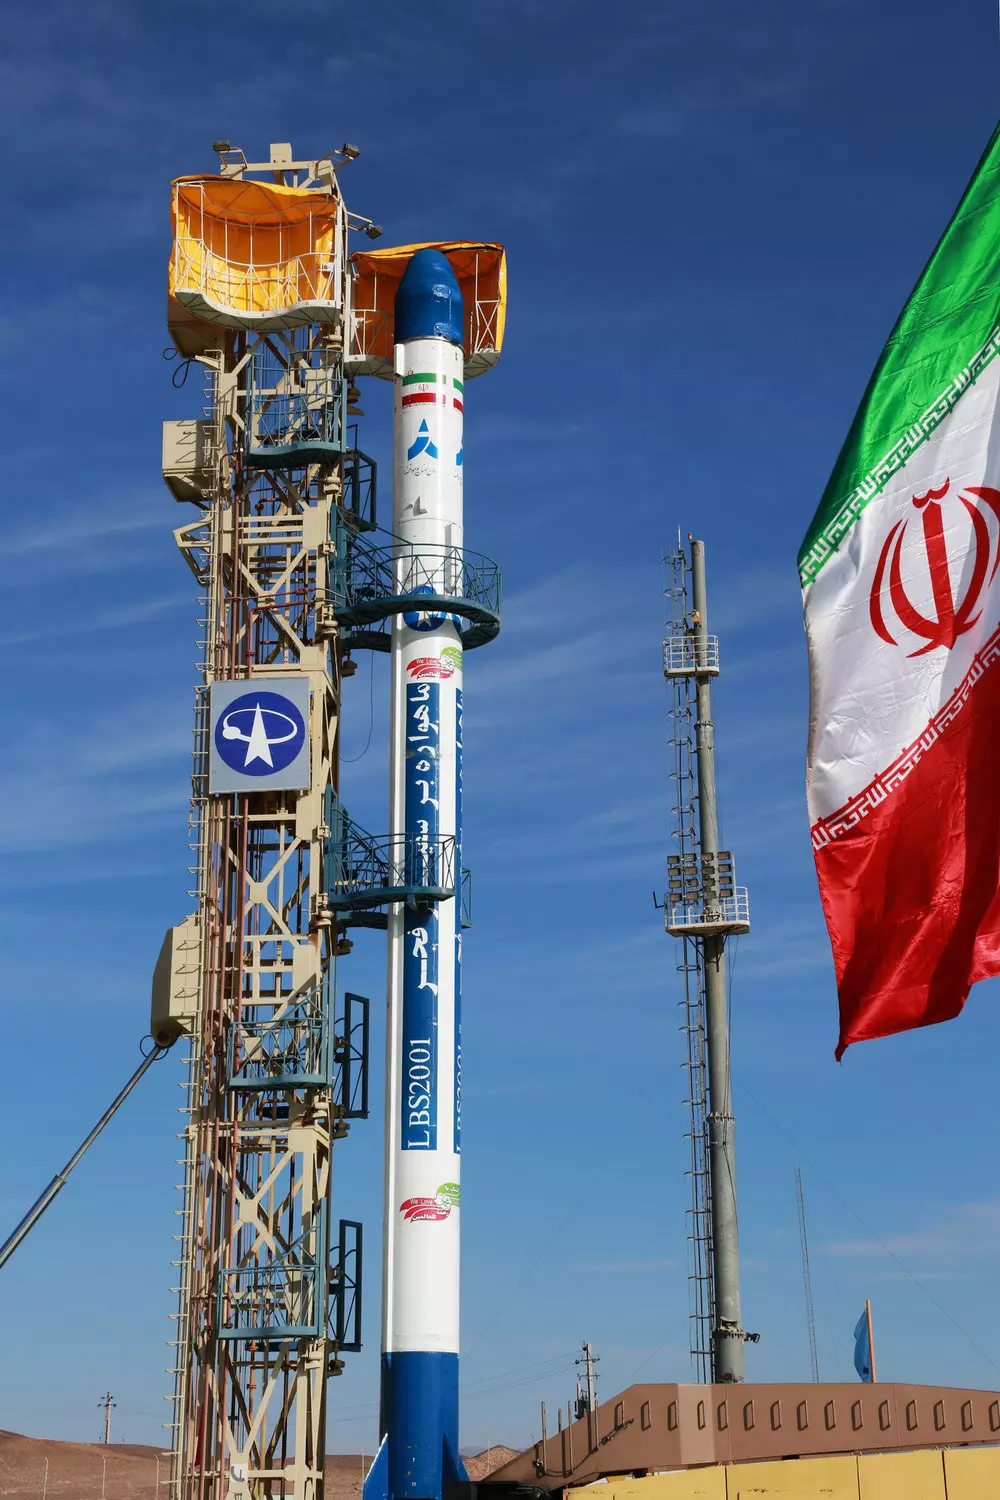 תכנית הטילים עדיין פעילה. הלוויין האיראני "פאג'ר" ששוגר בשבוע שעבר